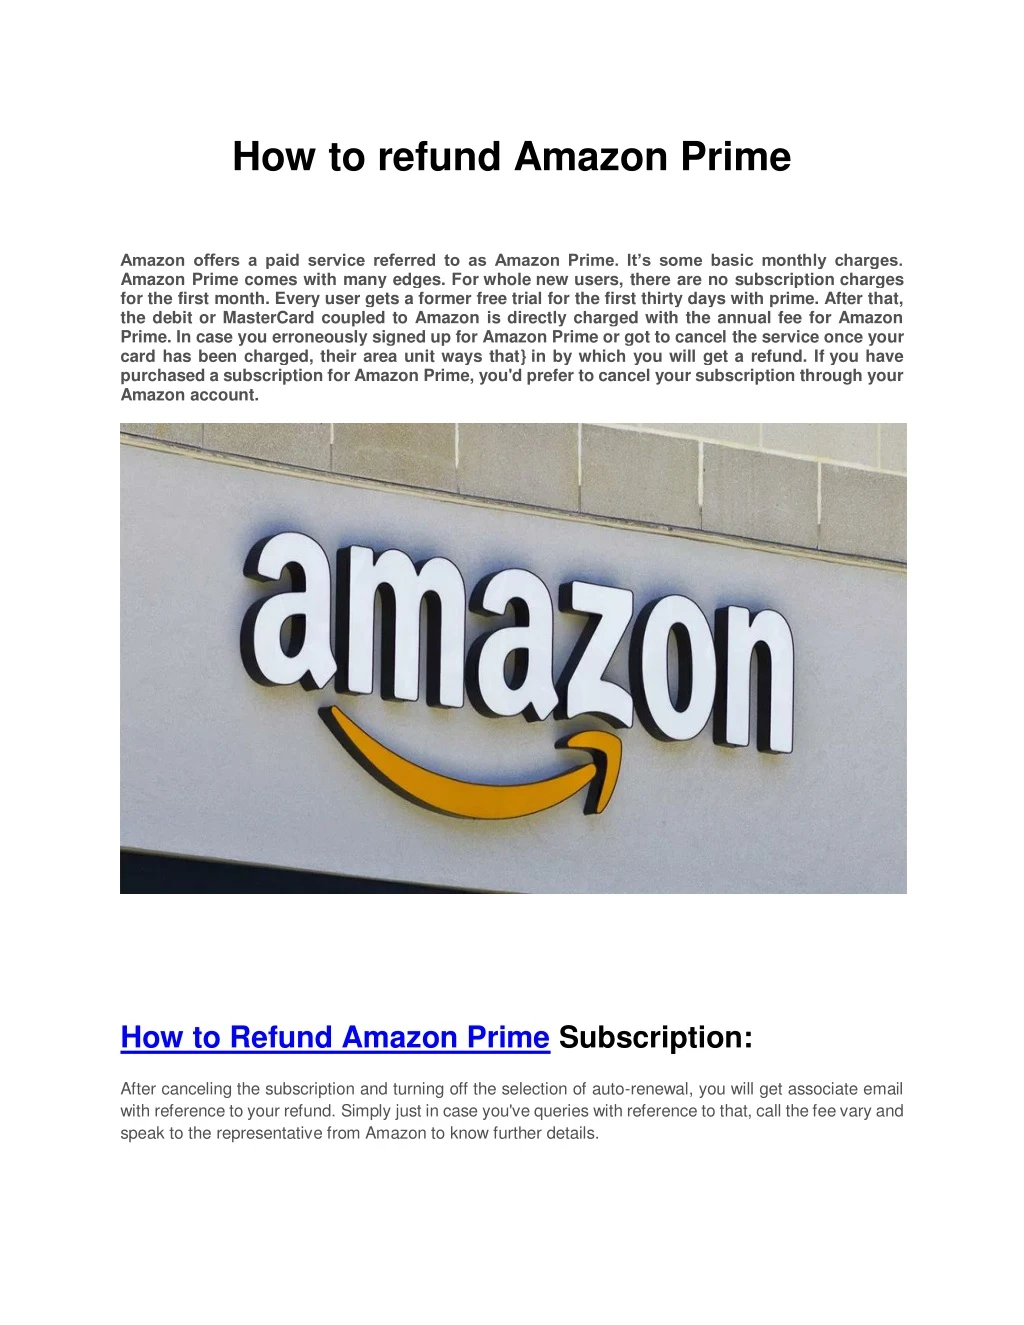 how to refund amazon prime